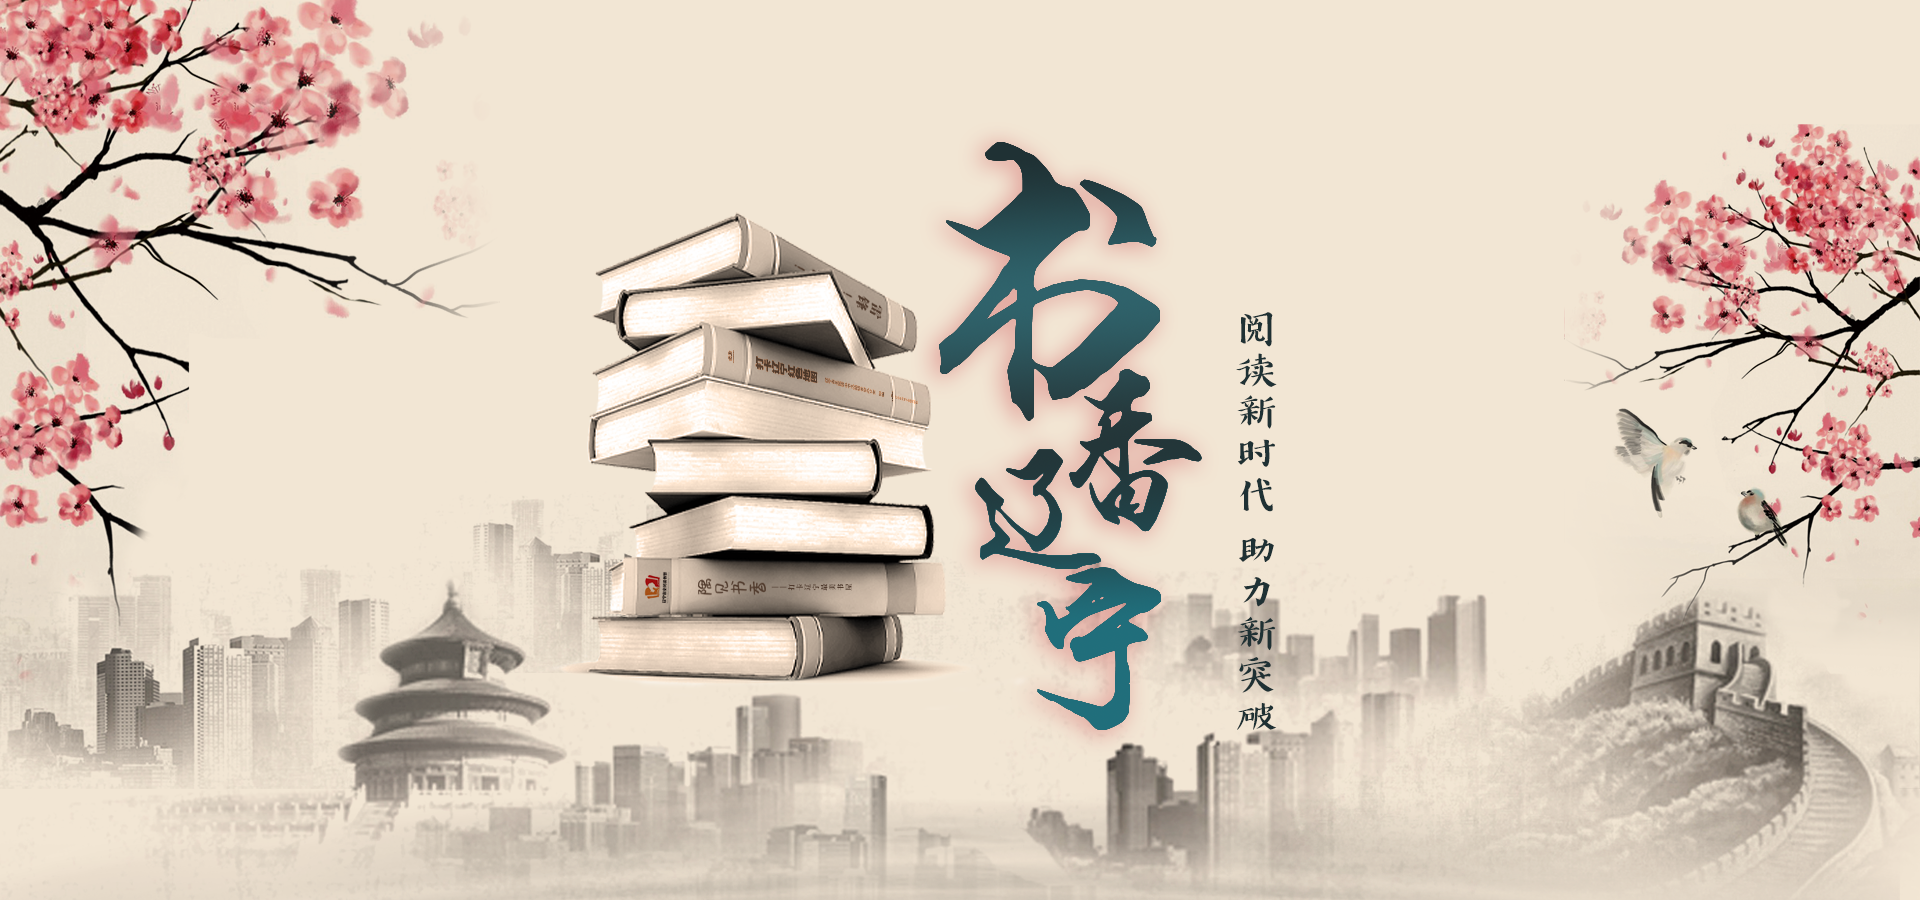 辽宁省第十二届全民读书节将于4月22日启幕